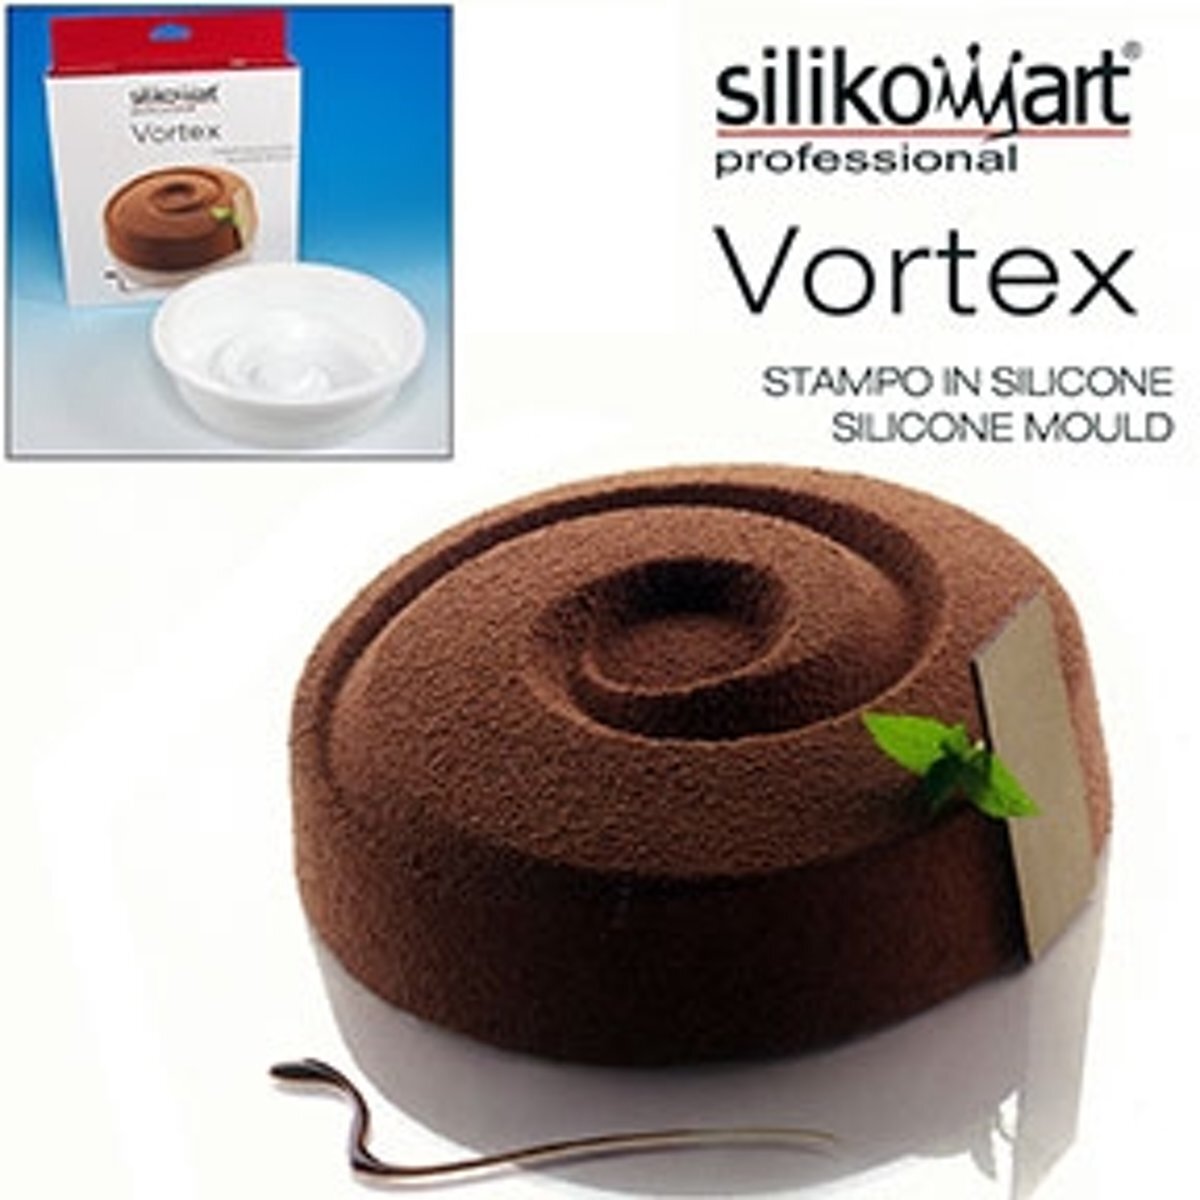 Silikomart Bavaroise / Bak Vorm "Vortex" Tortaflex Siliconen